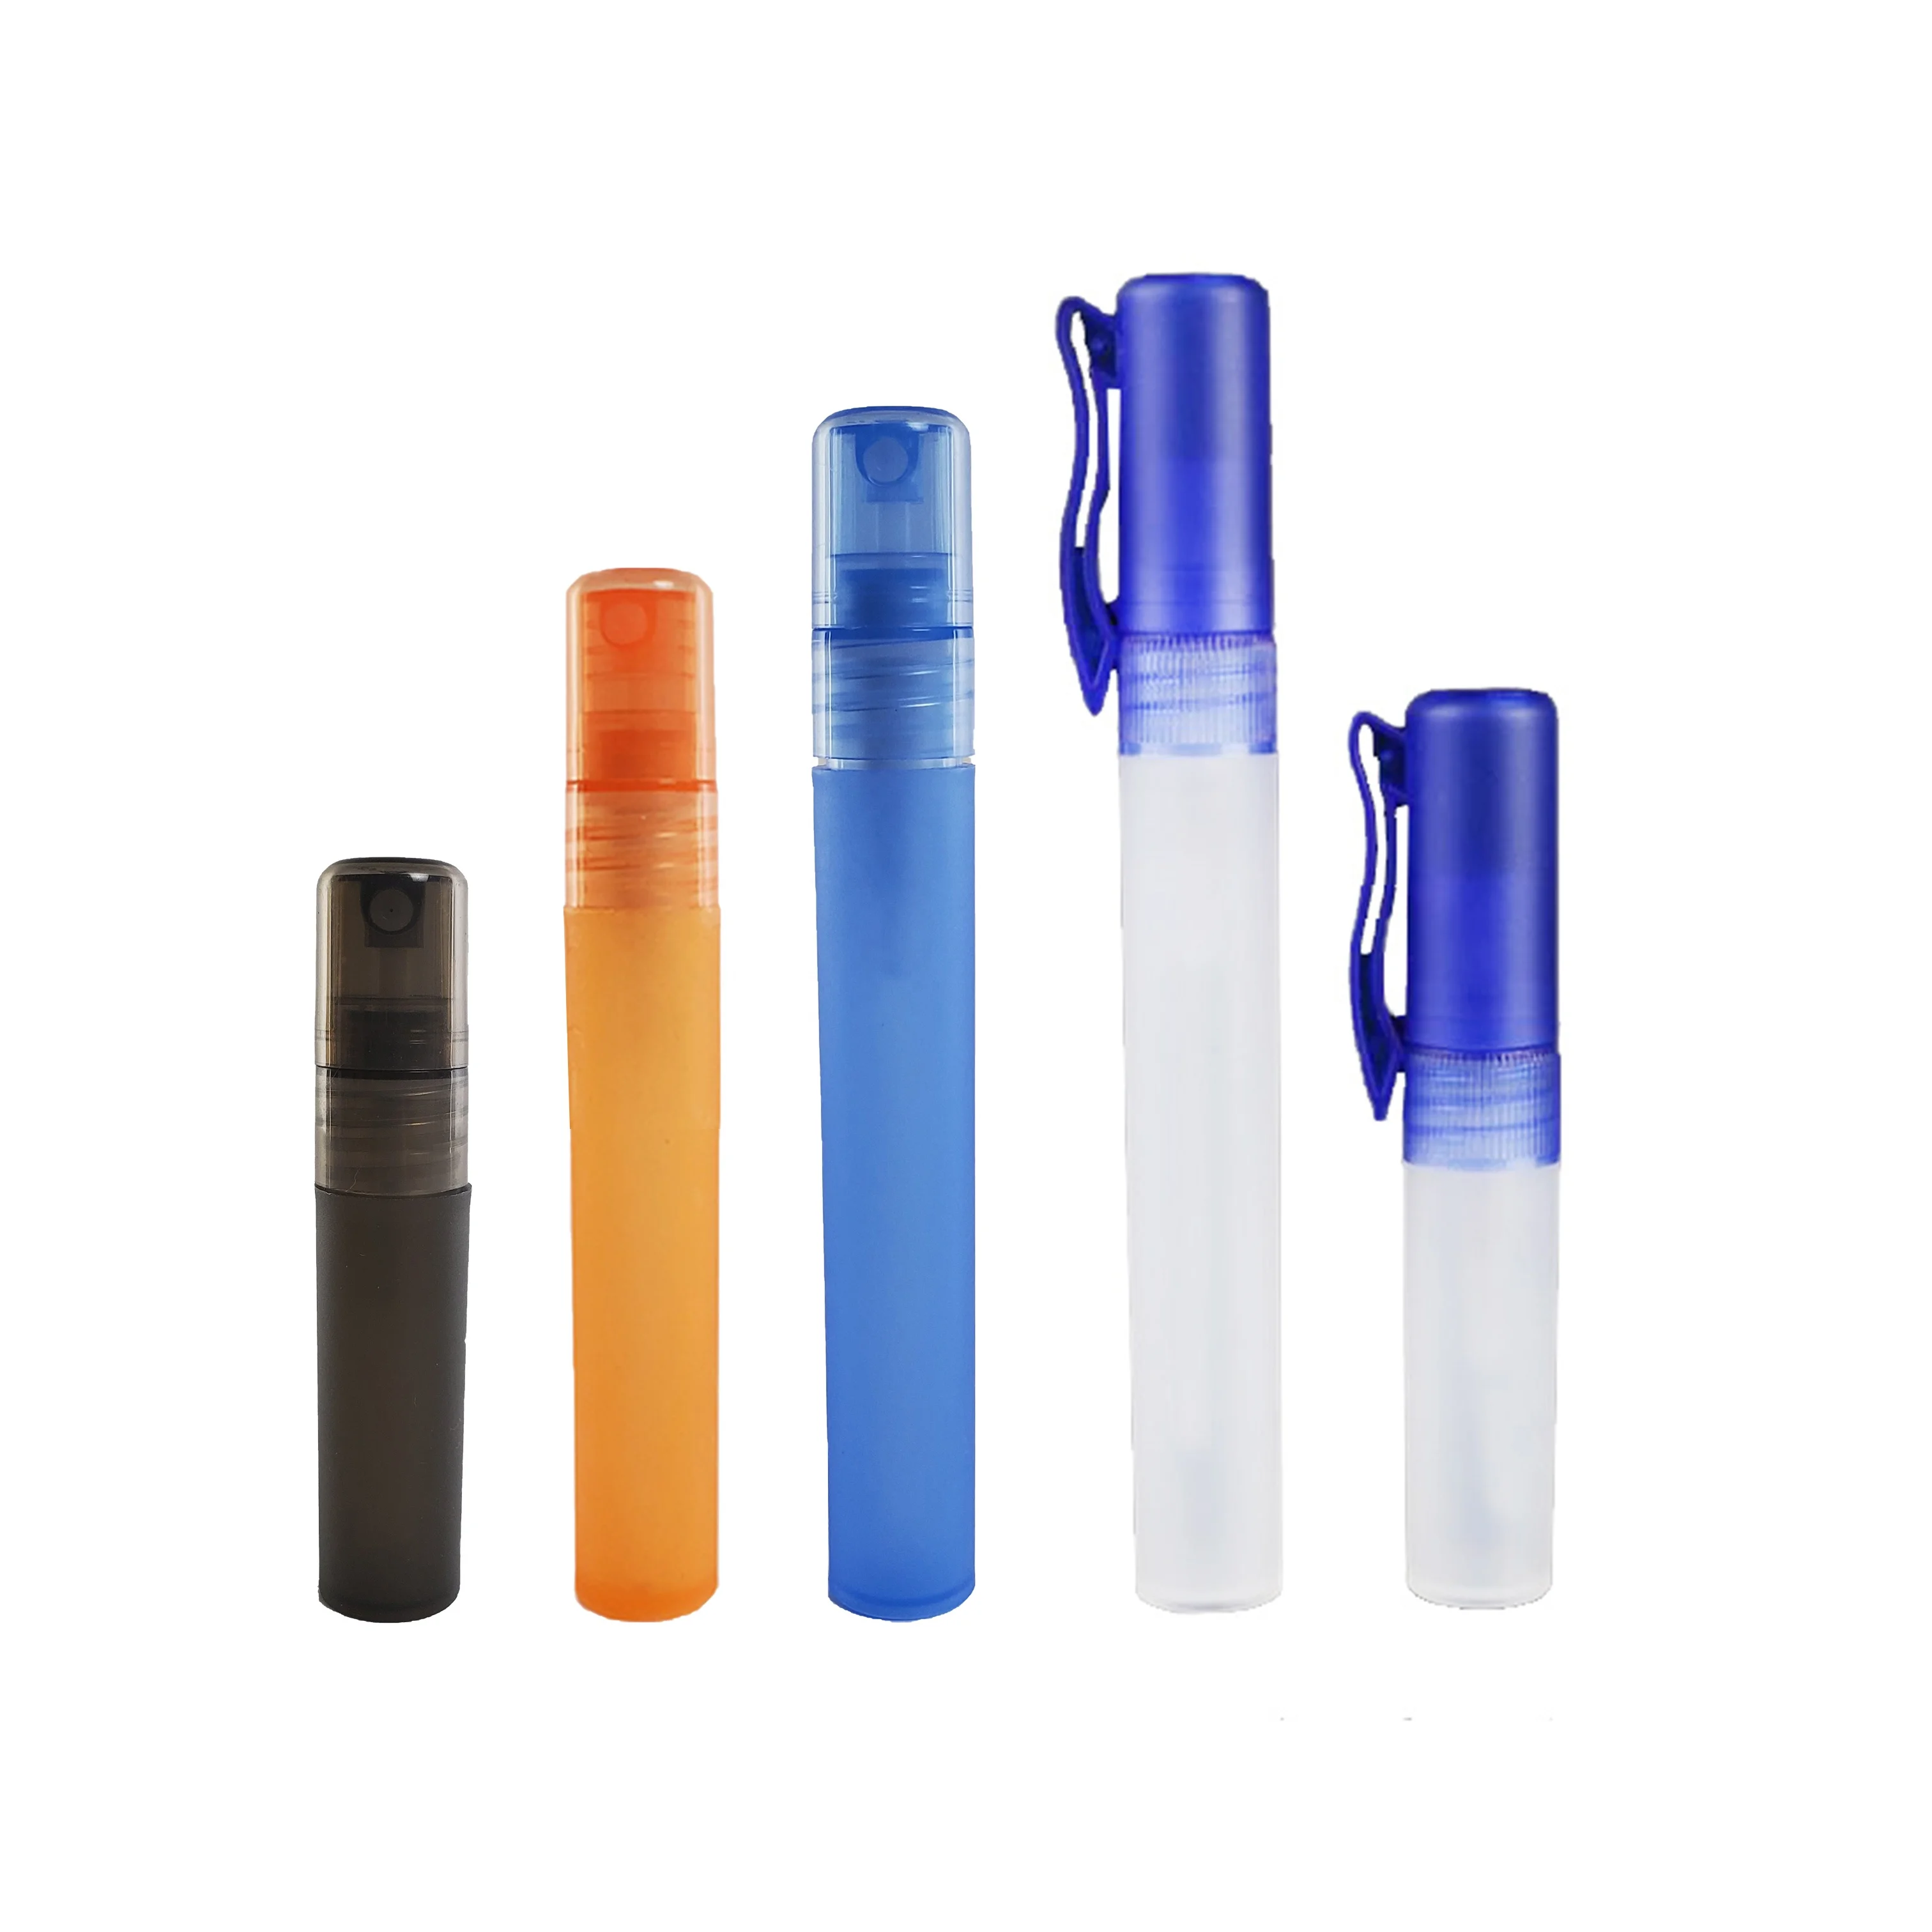 New Design 5ml 8ml 10ml Pen Sprayer for Perfume Sample PP Pocket Mini Hand  Sanitizer Plastic Atomizer Spray Bottle - China Plastic Bottle, Mist  sprayer